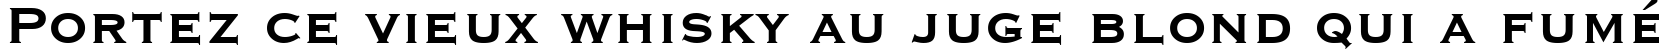 Пример написания шрифтом font119 текста на французском